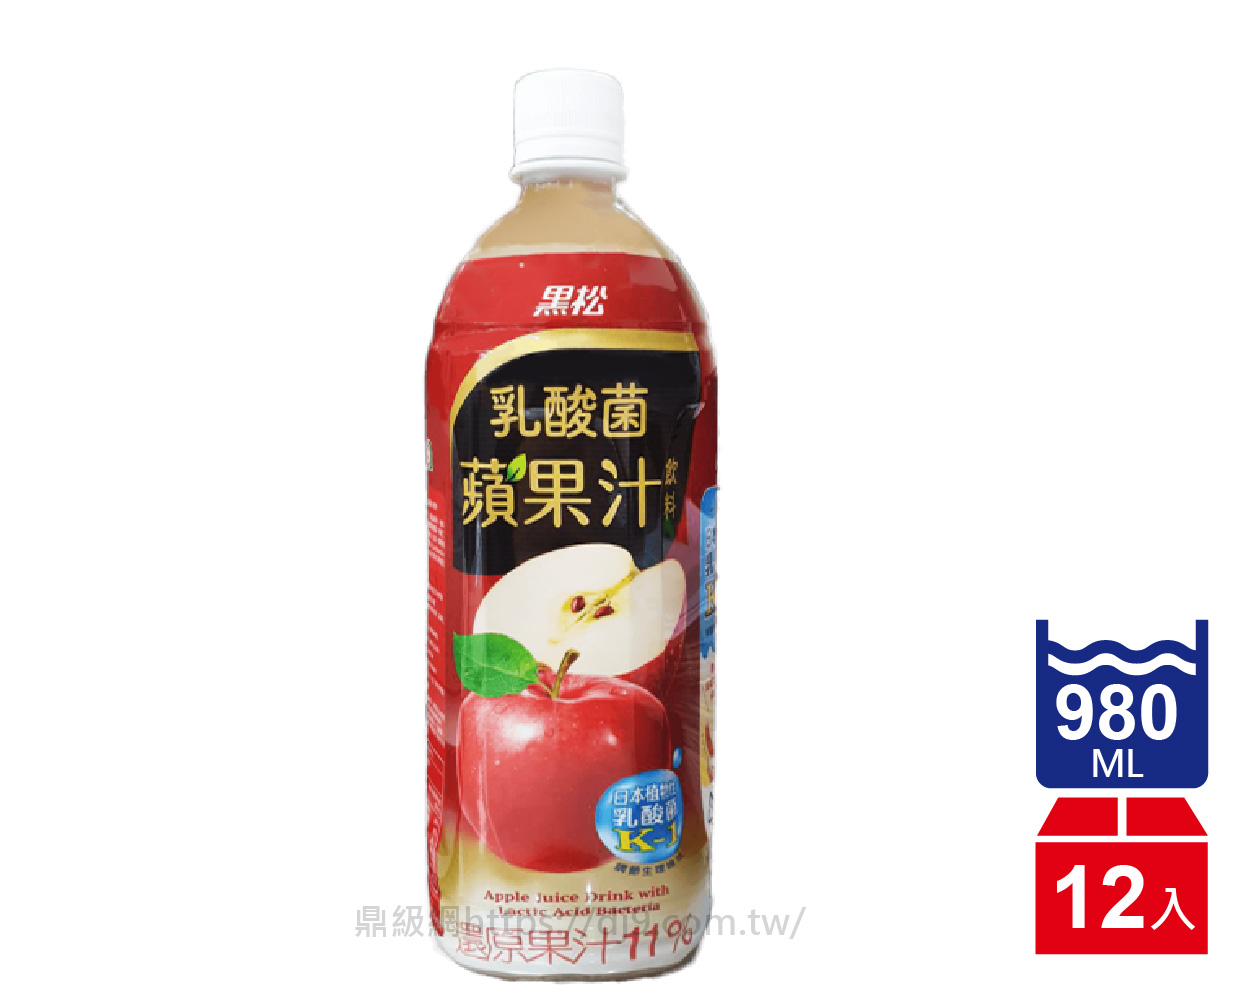 黑松 乳酸菌蘋果汁(980mlx12瓶)